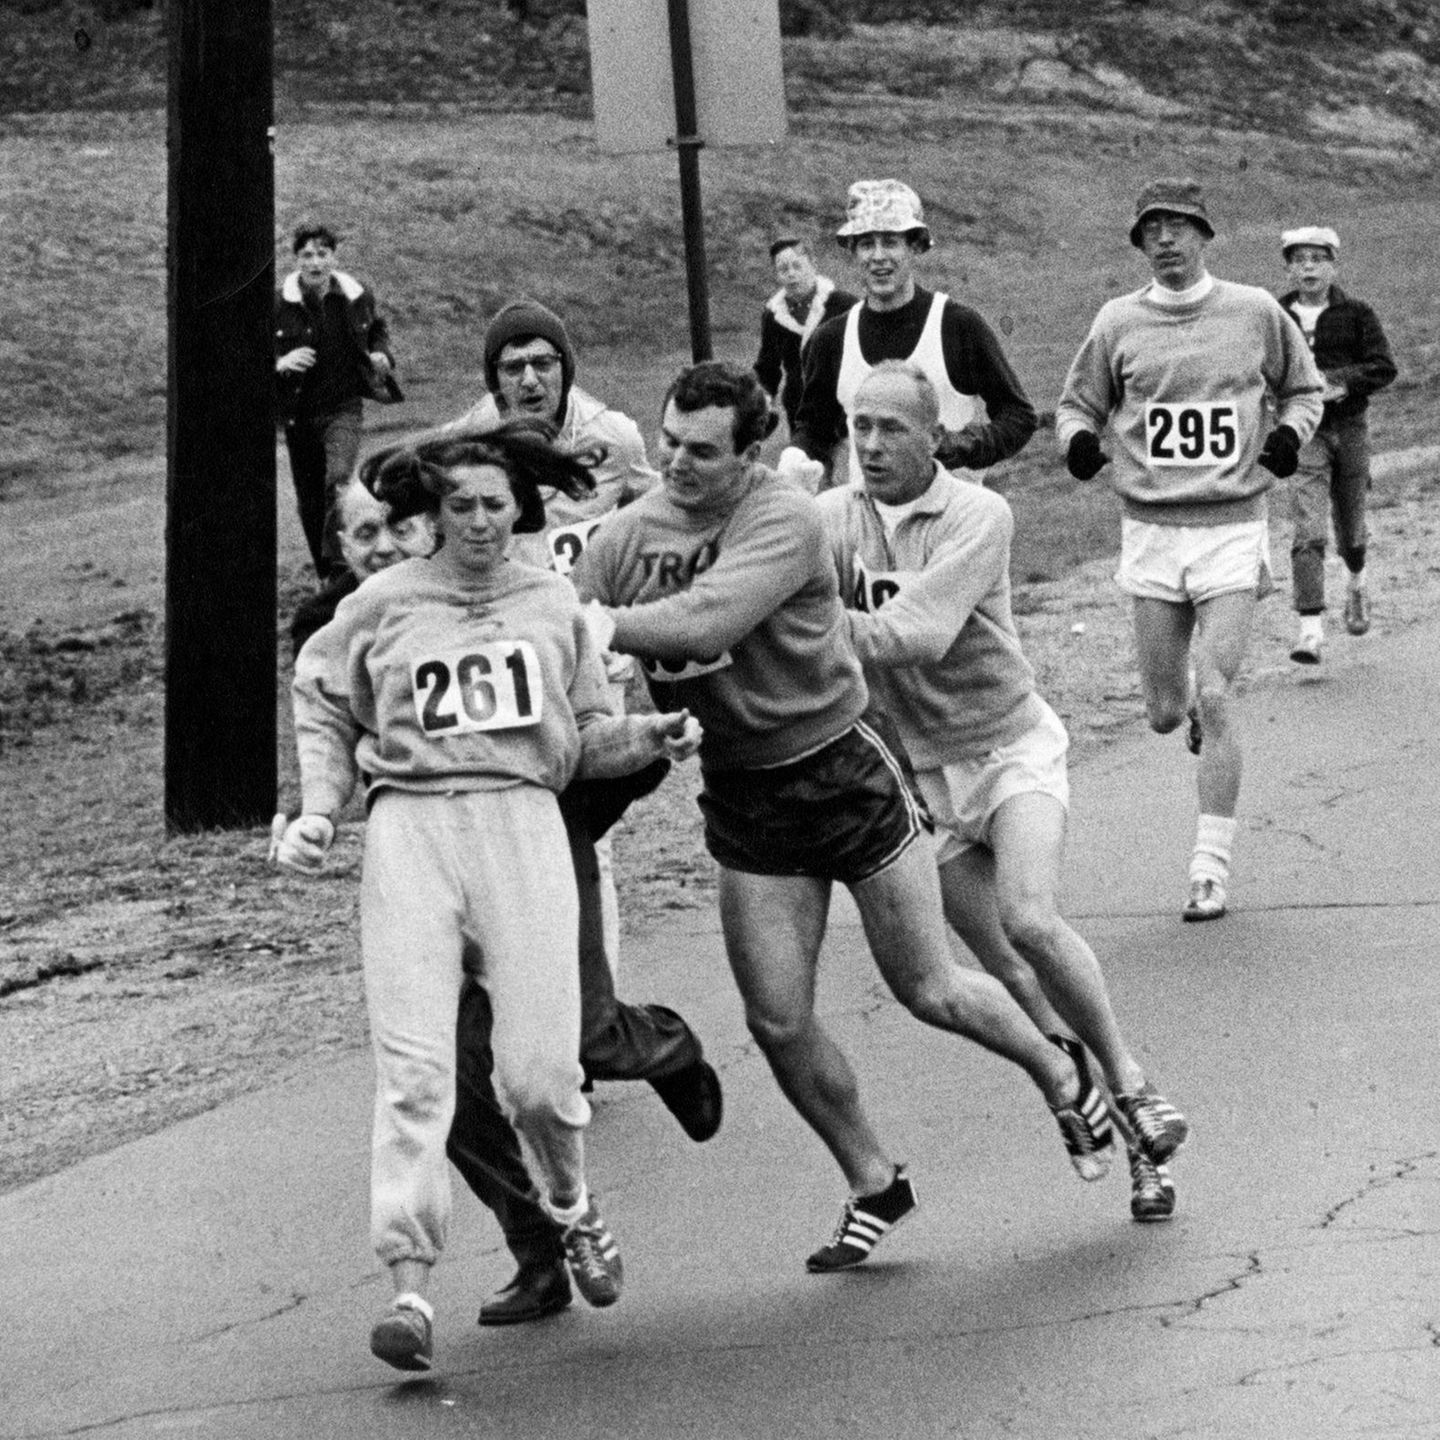 Der Moment, der Kathrine Switzer zur Ikone des Laufsports macht: Rennleiter John "Jock" Semple (links hinter Switzer) versucht, ihr die Startnummer zu entreißen. Switzers damaliger Freund und ihr Coach greifen ein